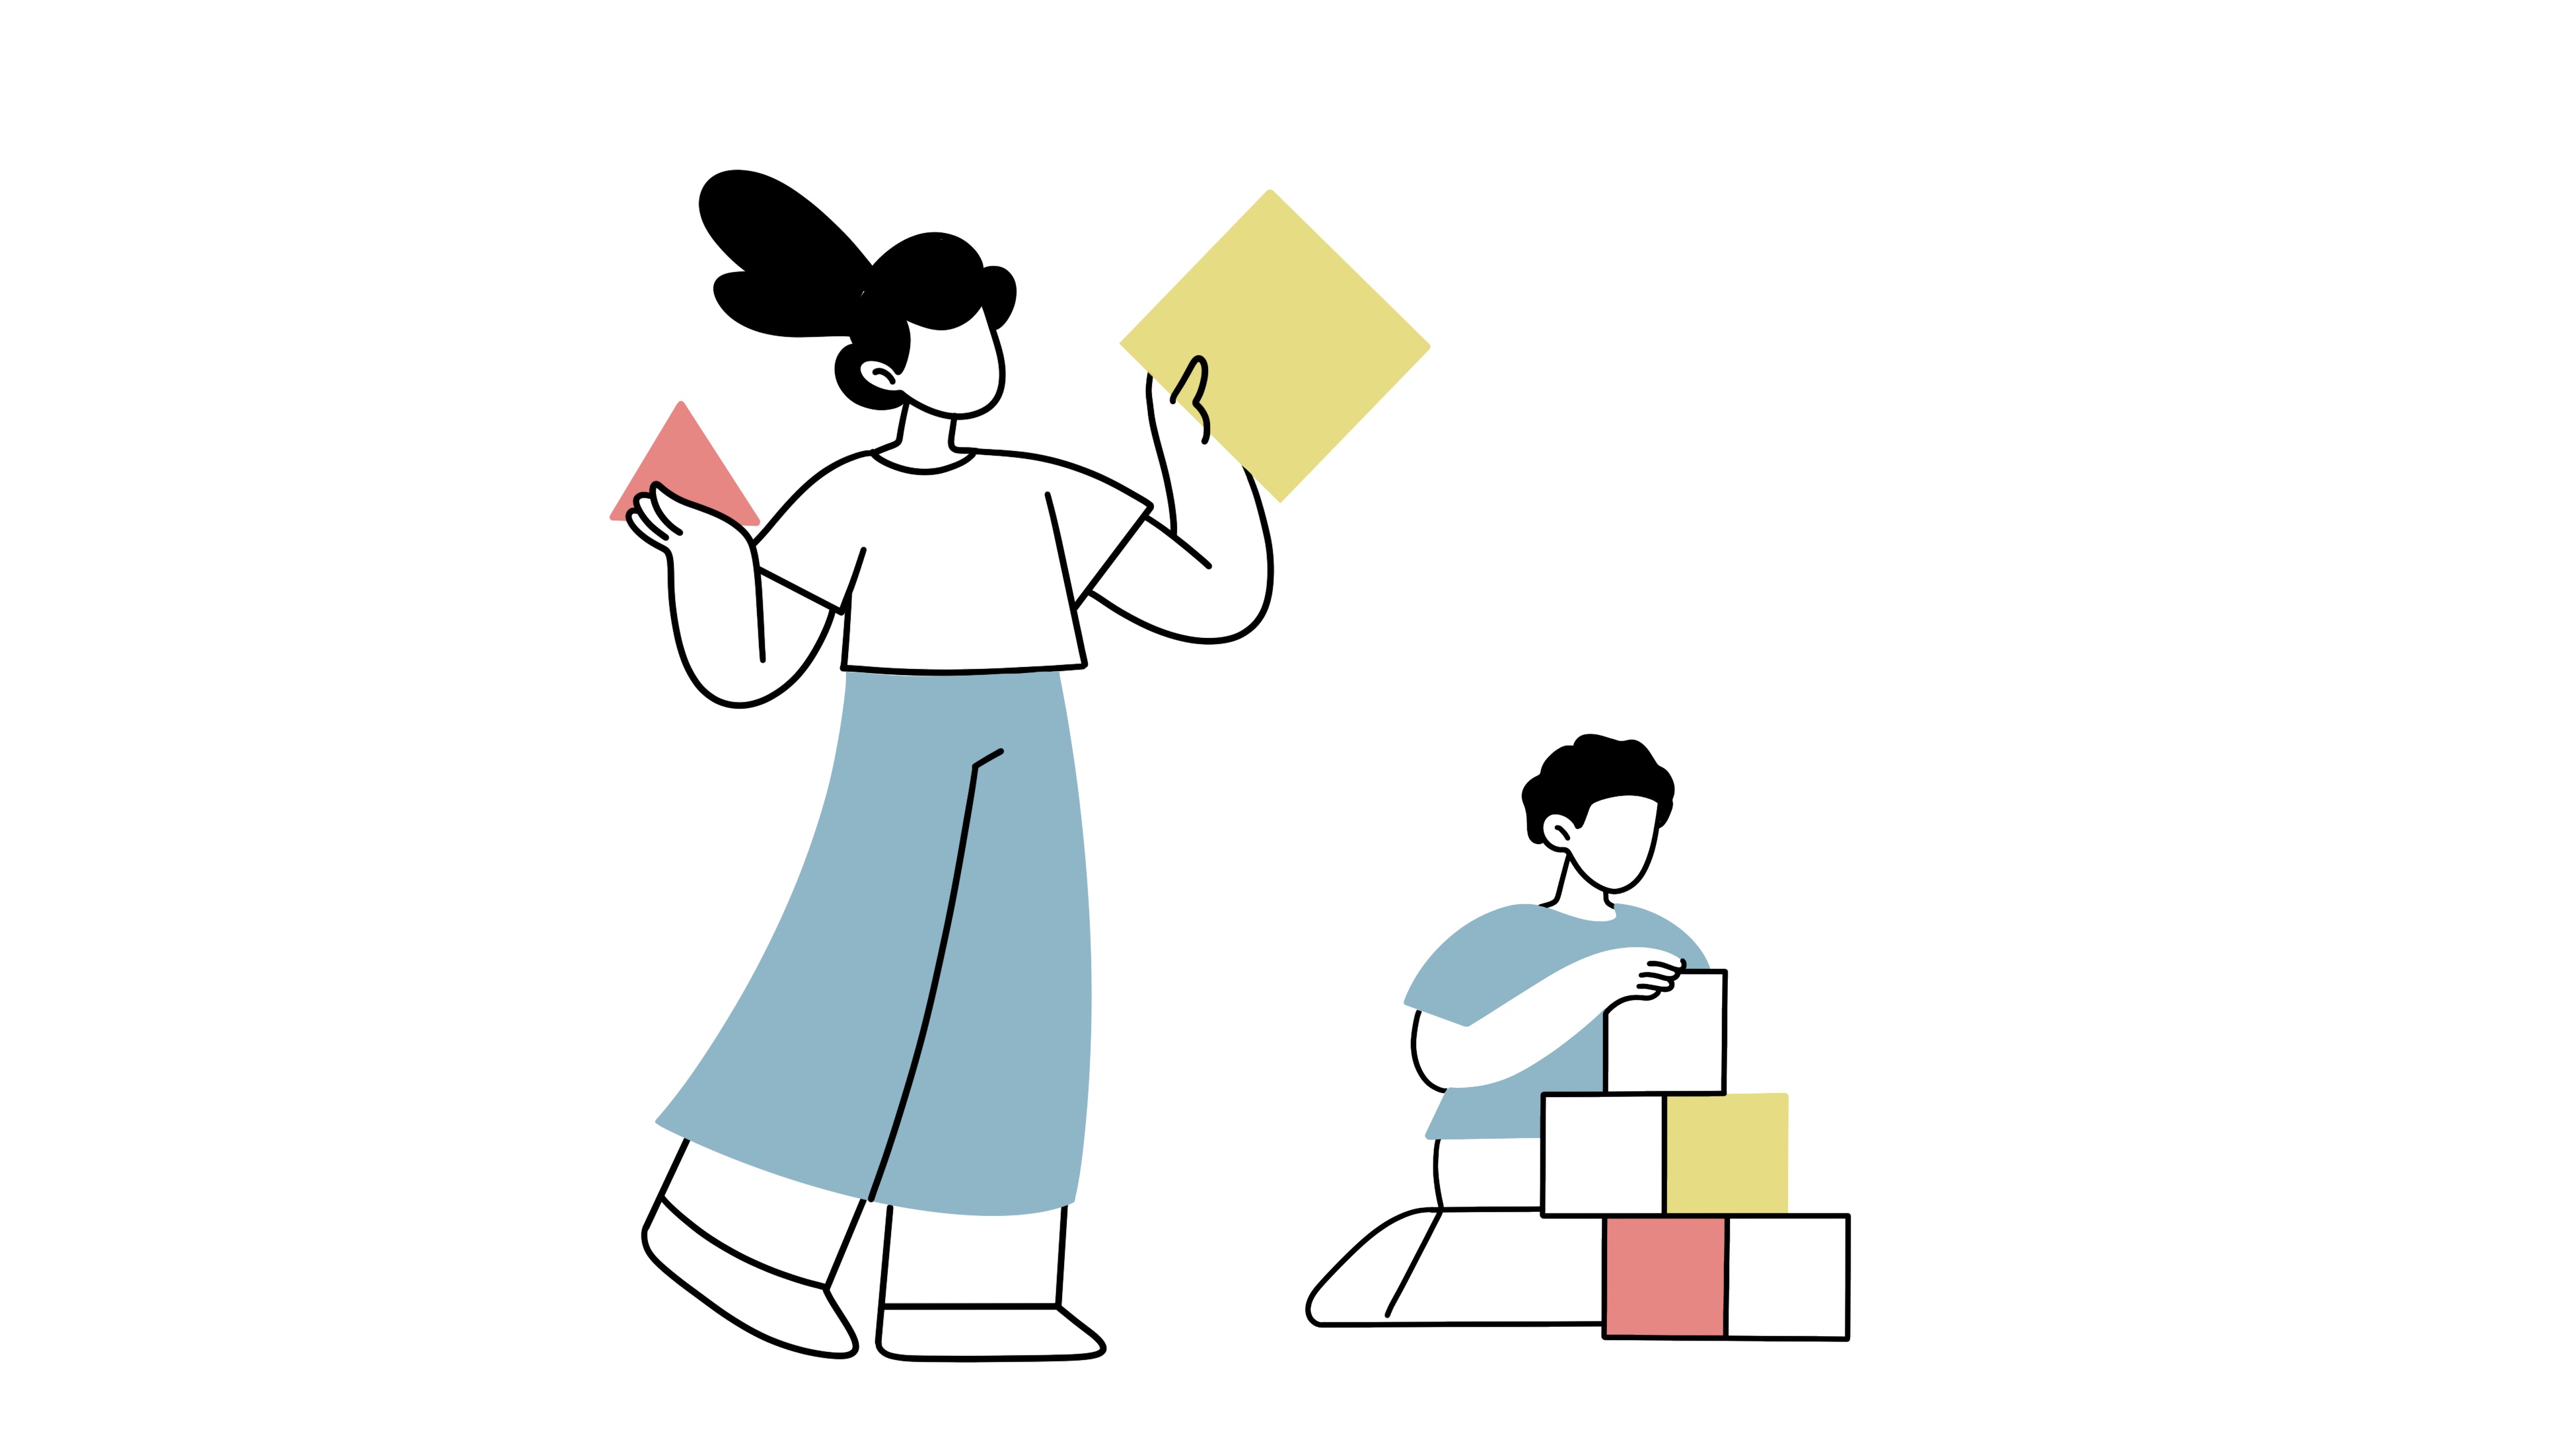 Die Illustration zeigt eine Kinderpflegerin die einen Jungen betreut und mit ihm spielt.